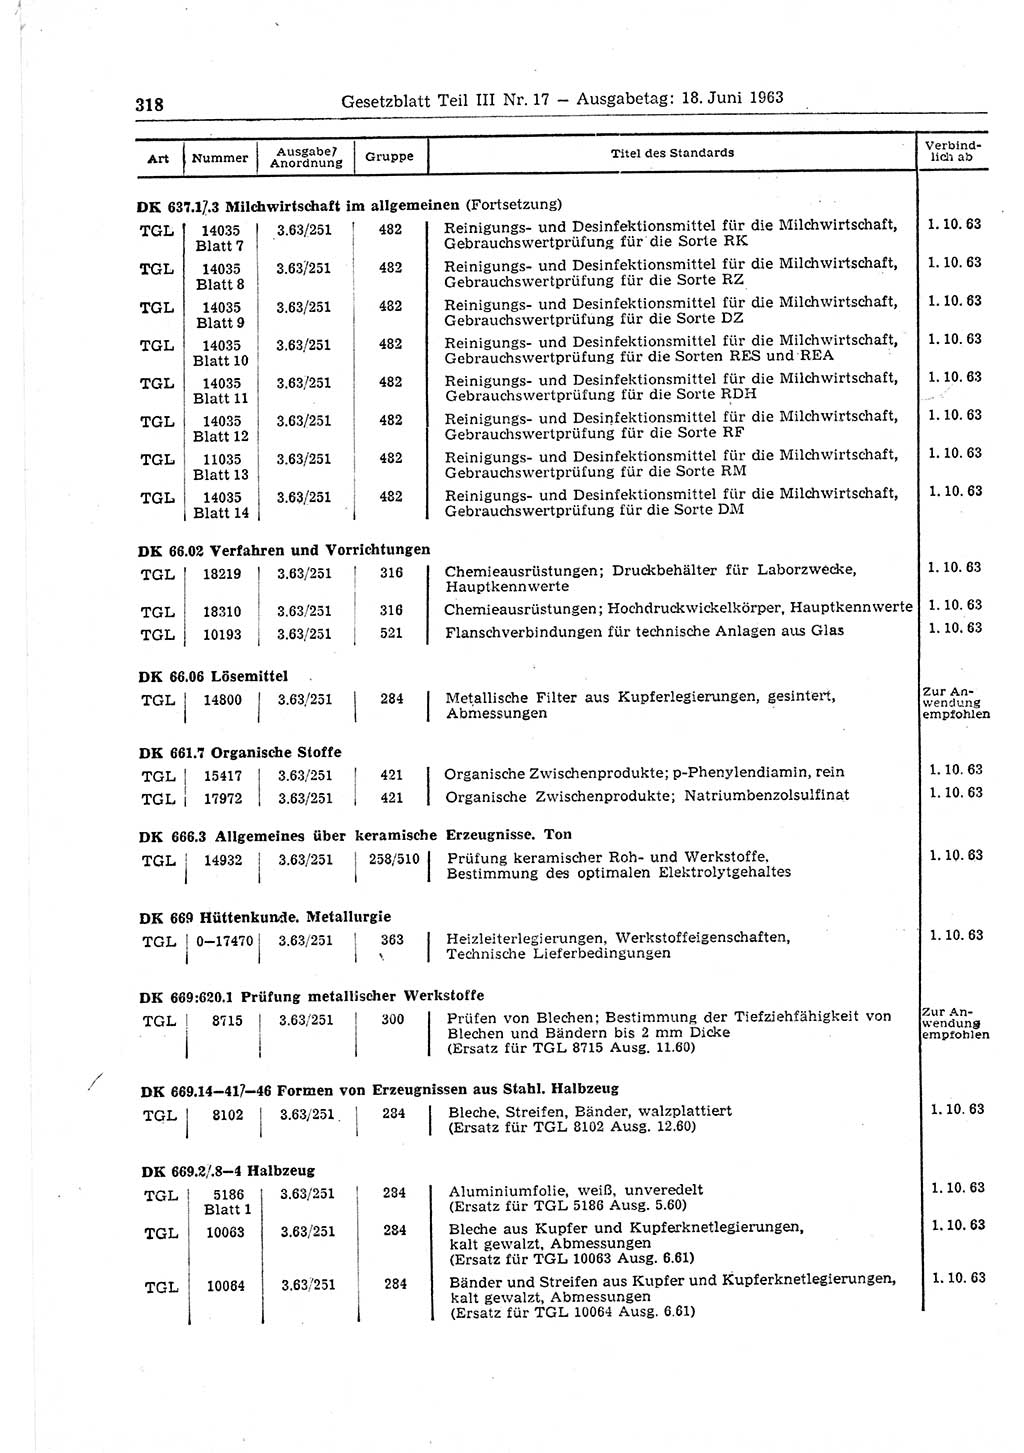 Gesetzblatt (GBl.) der Deutschen Demokratischen Republik (DDR) Teil ⅠⅠⅠ 1963, Seite 318 (GBl. DDR ⅠⅠⅠ 1963, S. 318)